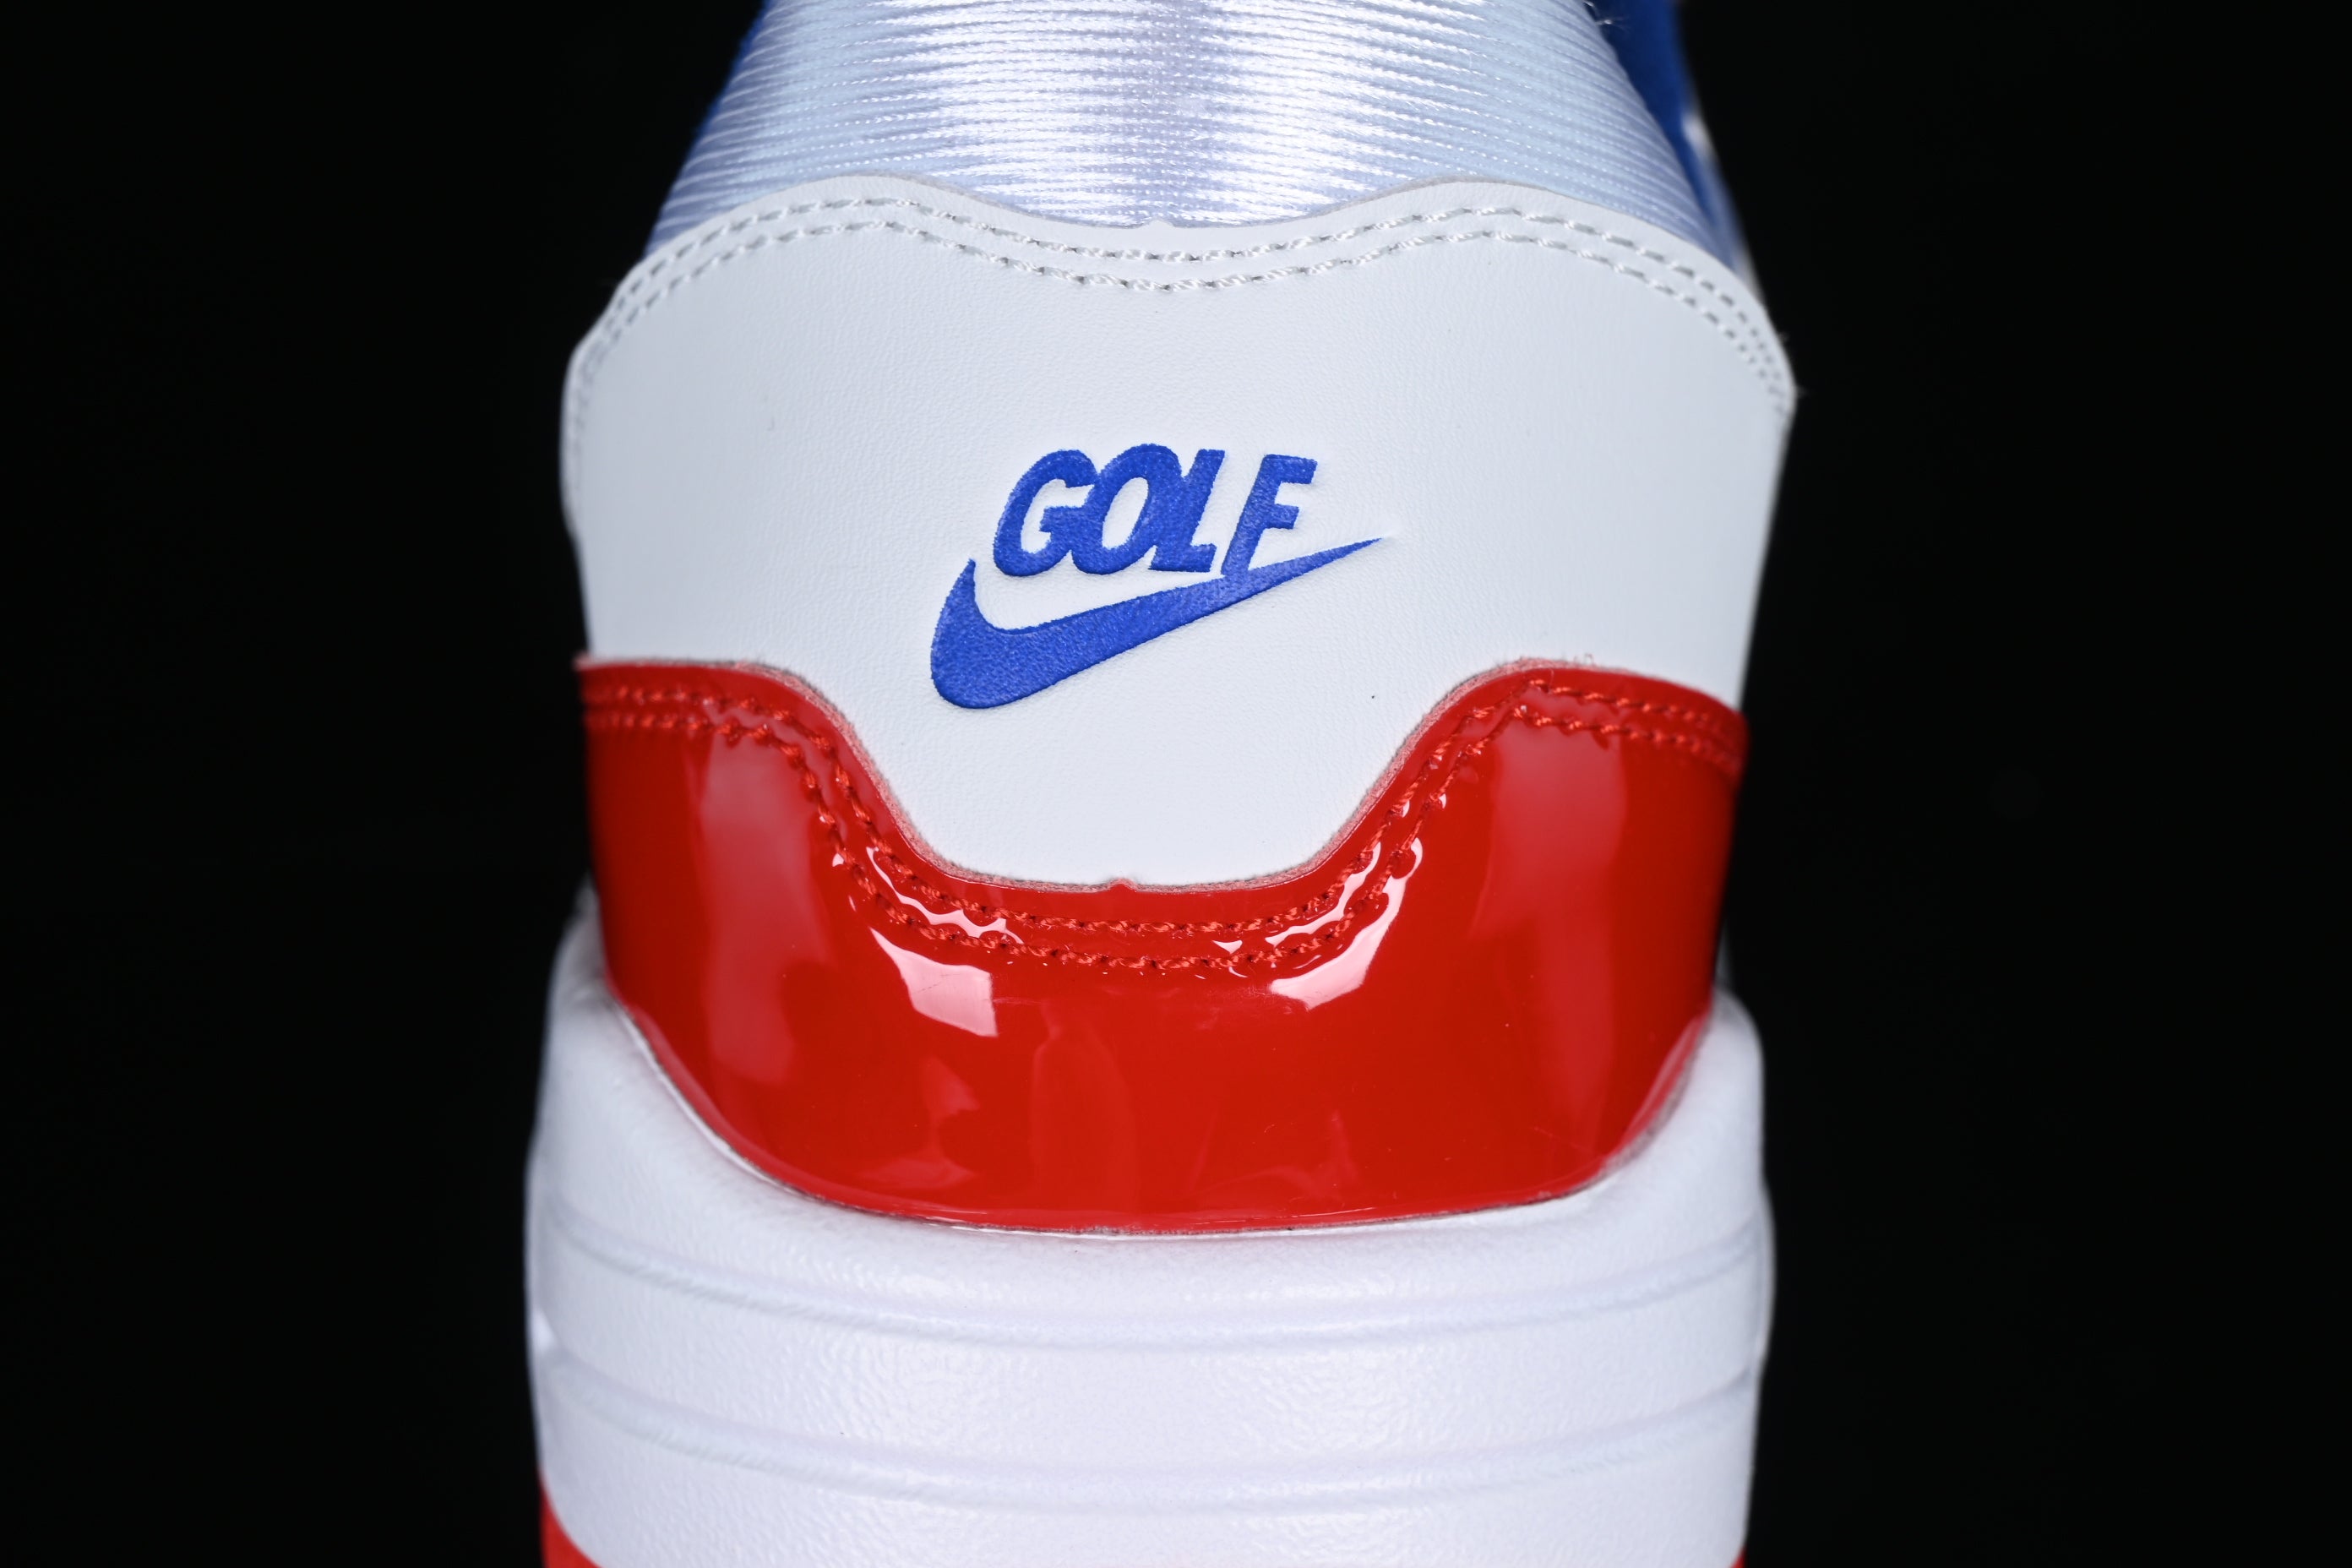 NikeMens Air Max 1 AM1 - Golf USA